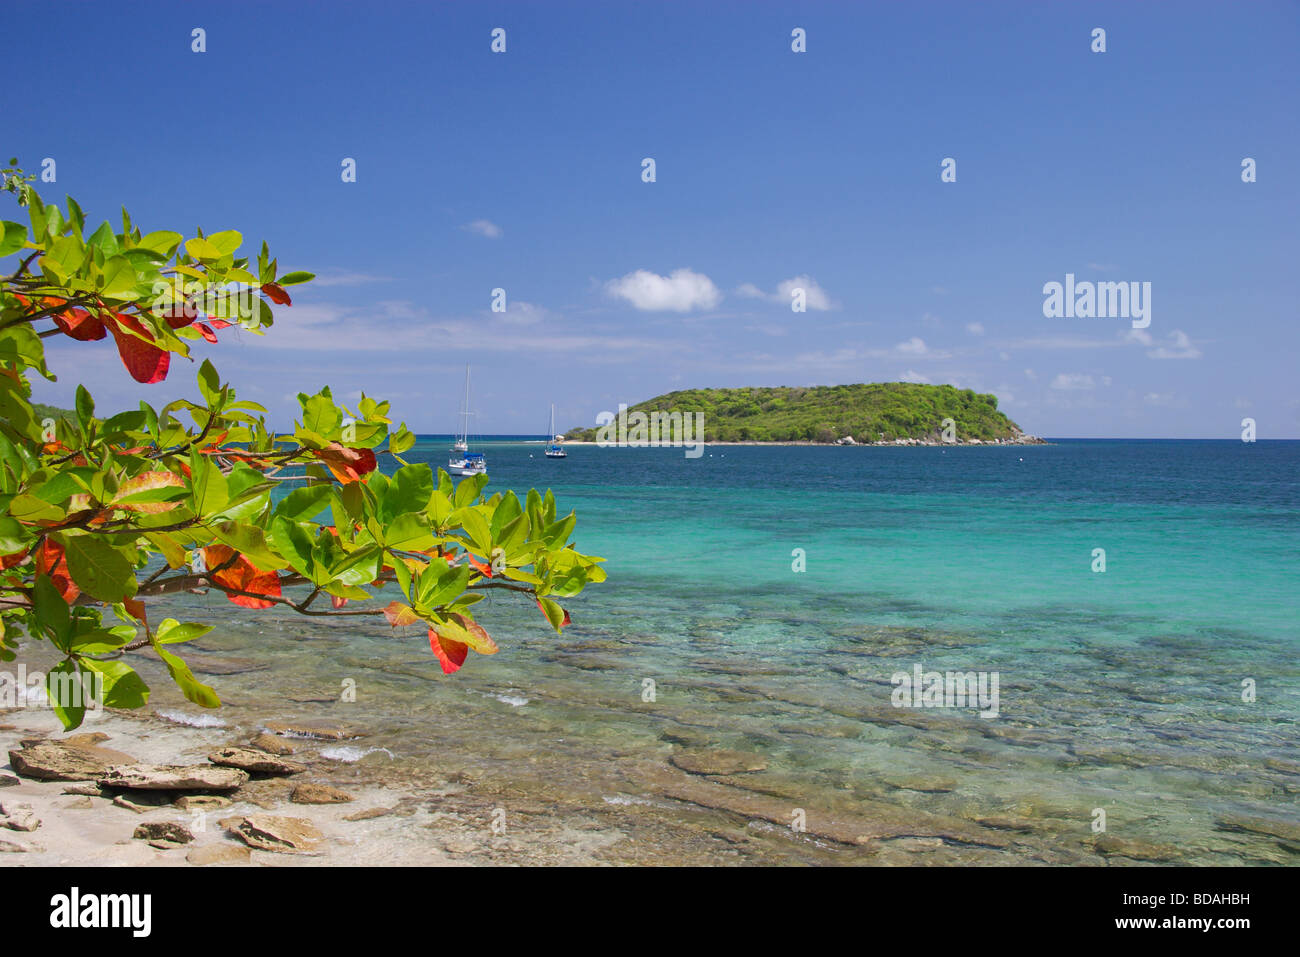 Colorata spiaggia tropicale presso la città di esperenza, isola Vieques, Puerto Rico Foto Stock